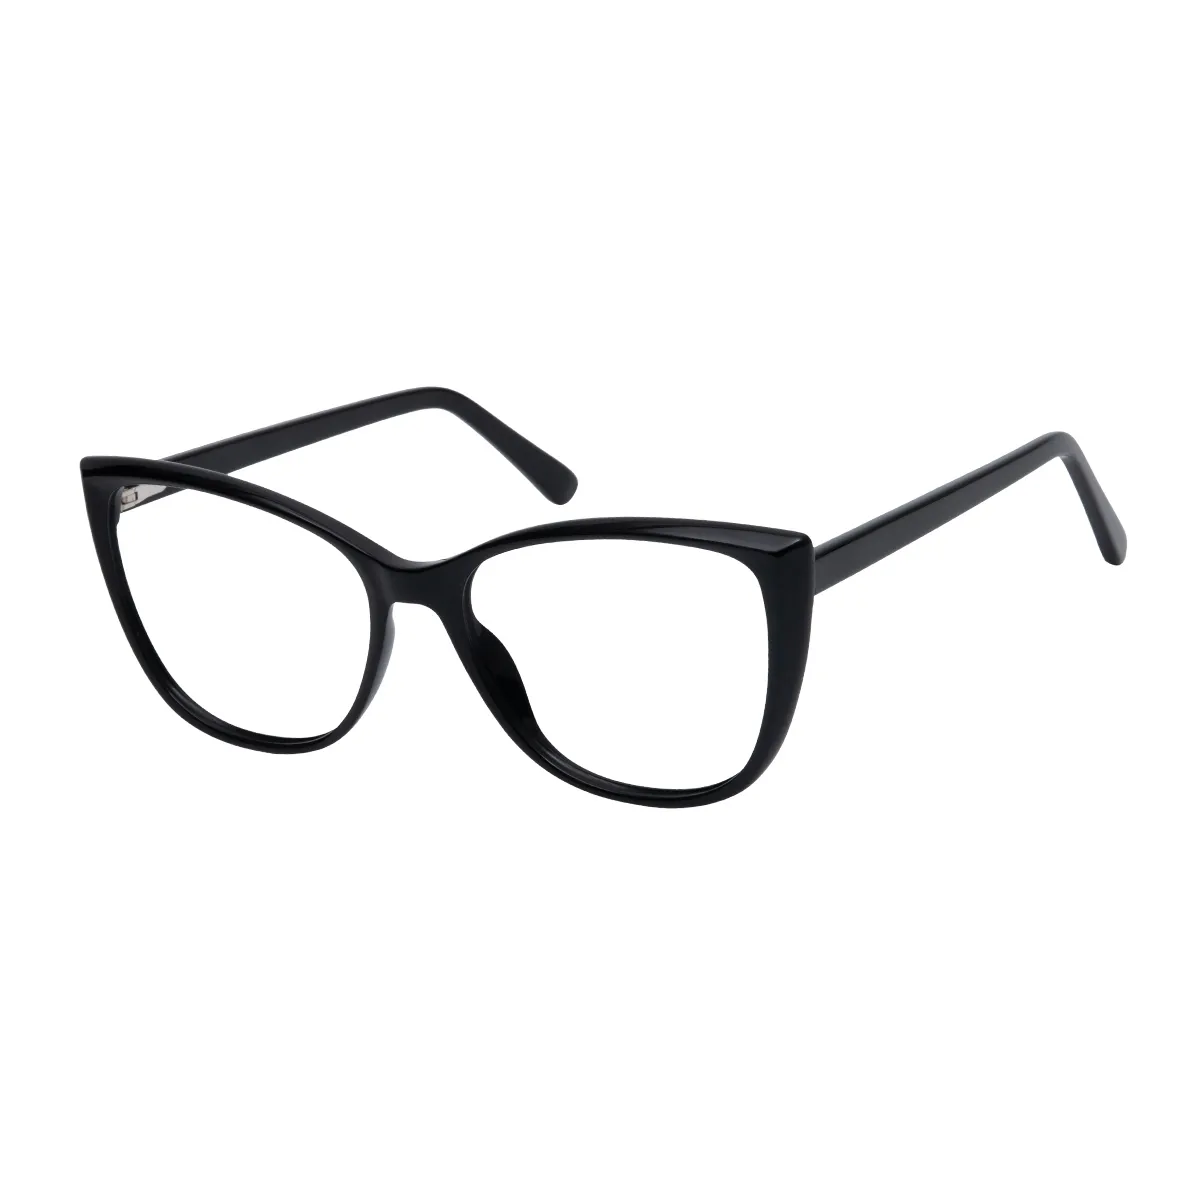 Amber - Square Black Glasses for Women